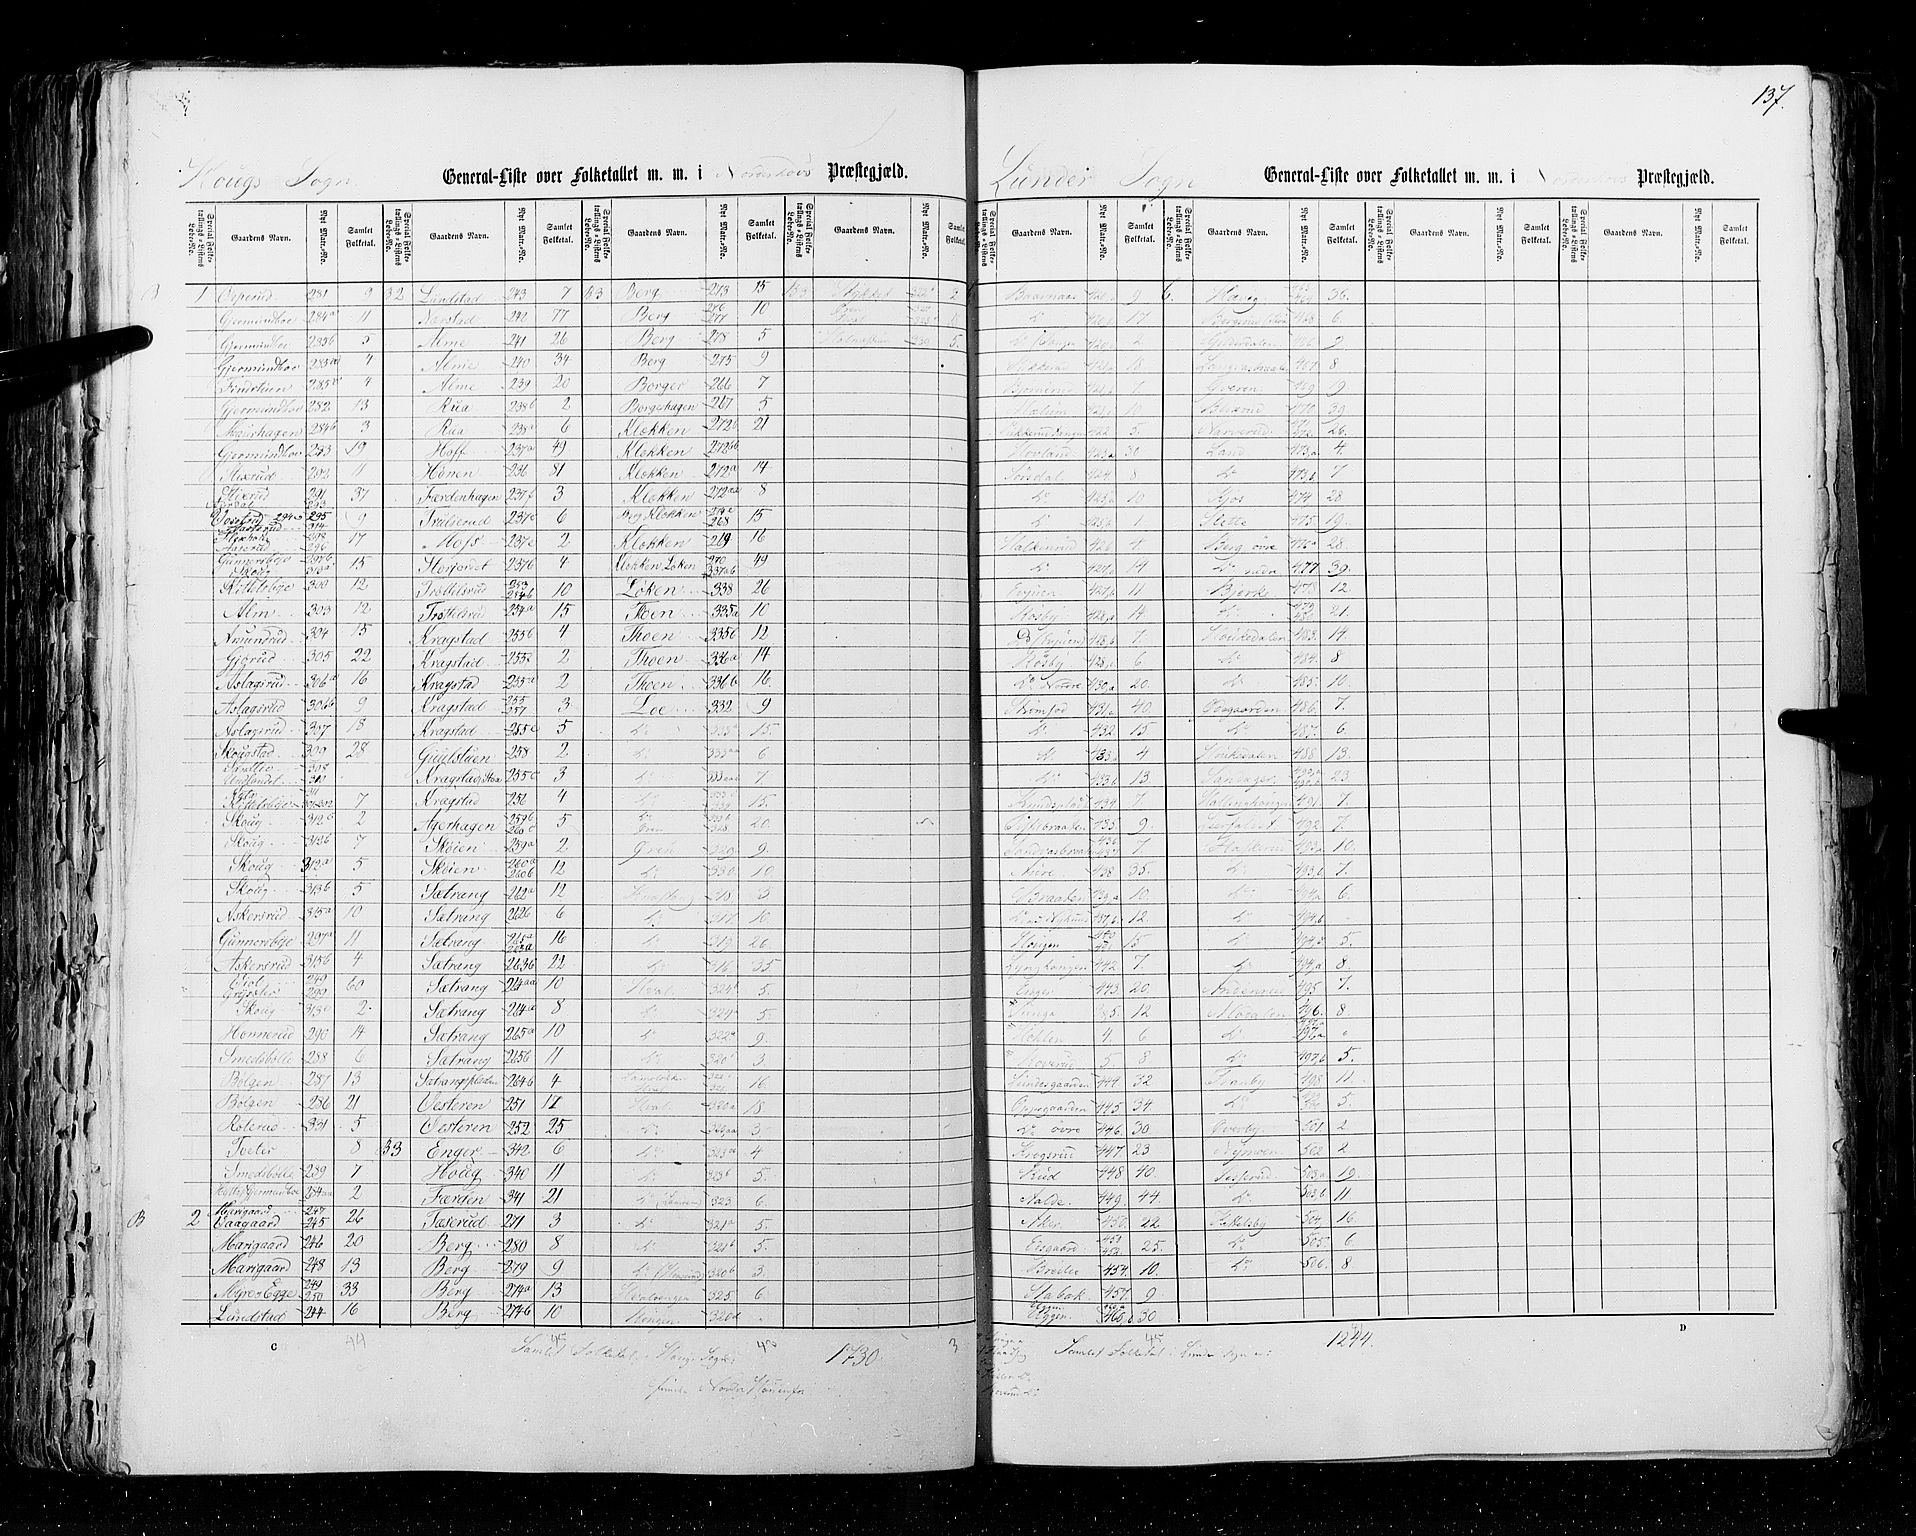 RA, Census 1855, vol. 2: Kristians amt, Buskerud amt og Jarlsberg og Larvik amt, 1855, p. 137